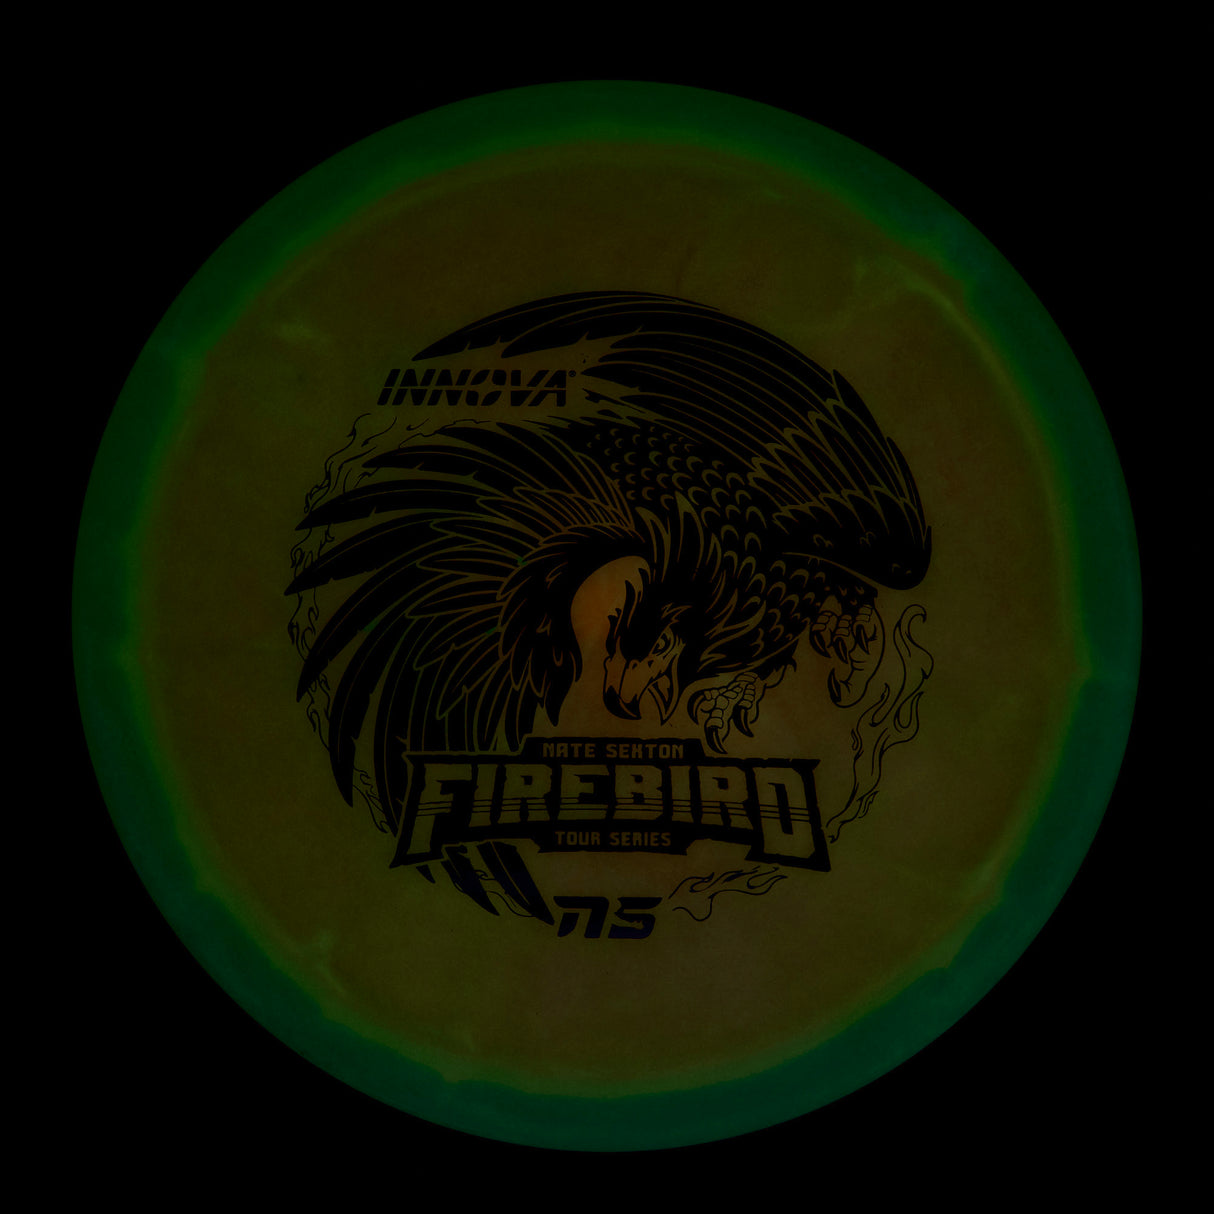 Innova Firebird - Nate Sexton Tour Series Champion Glow 173g | Style 0005